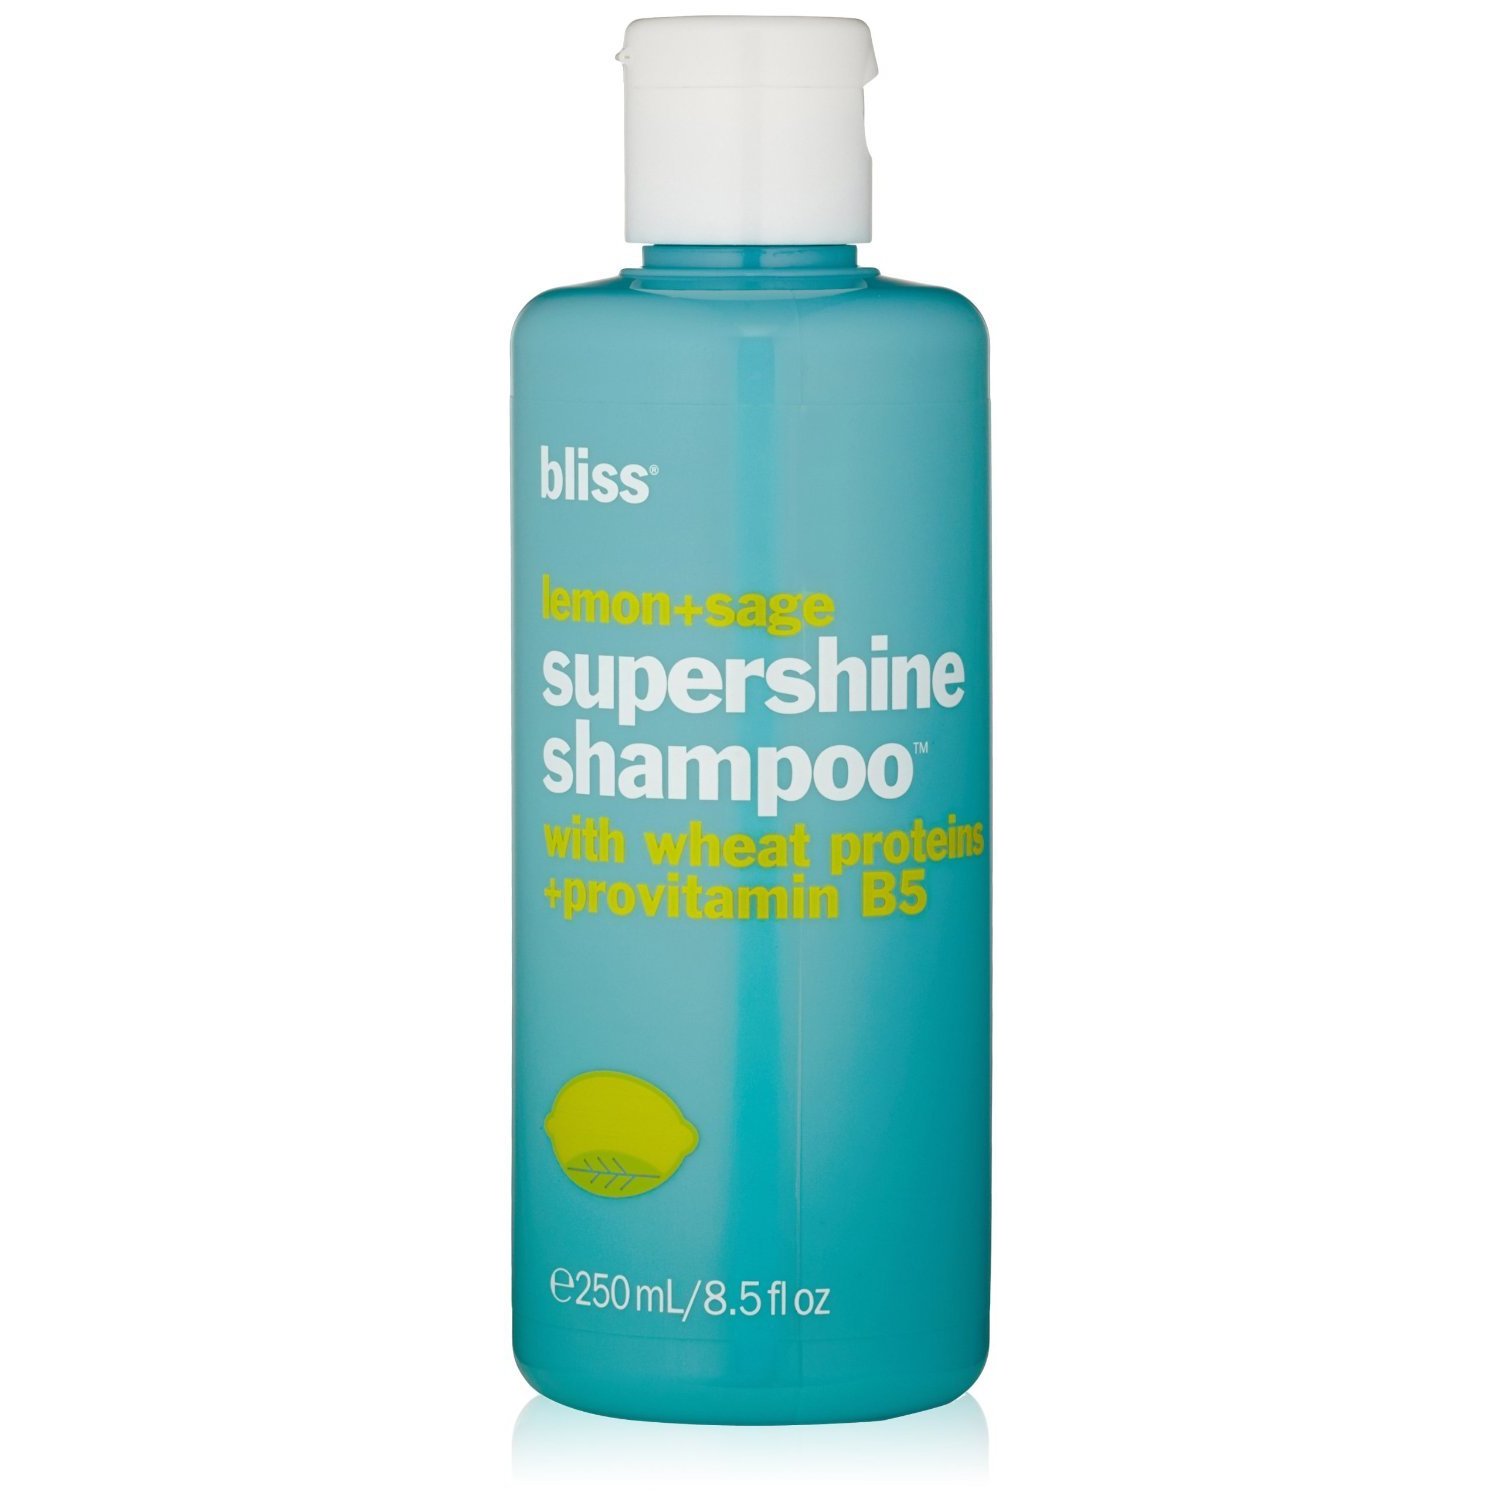 Bliss shampoo lemon sage